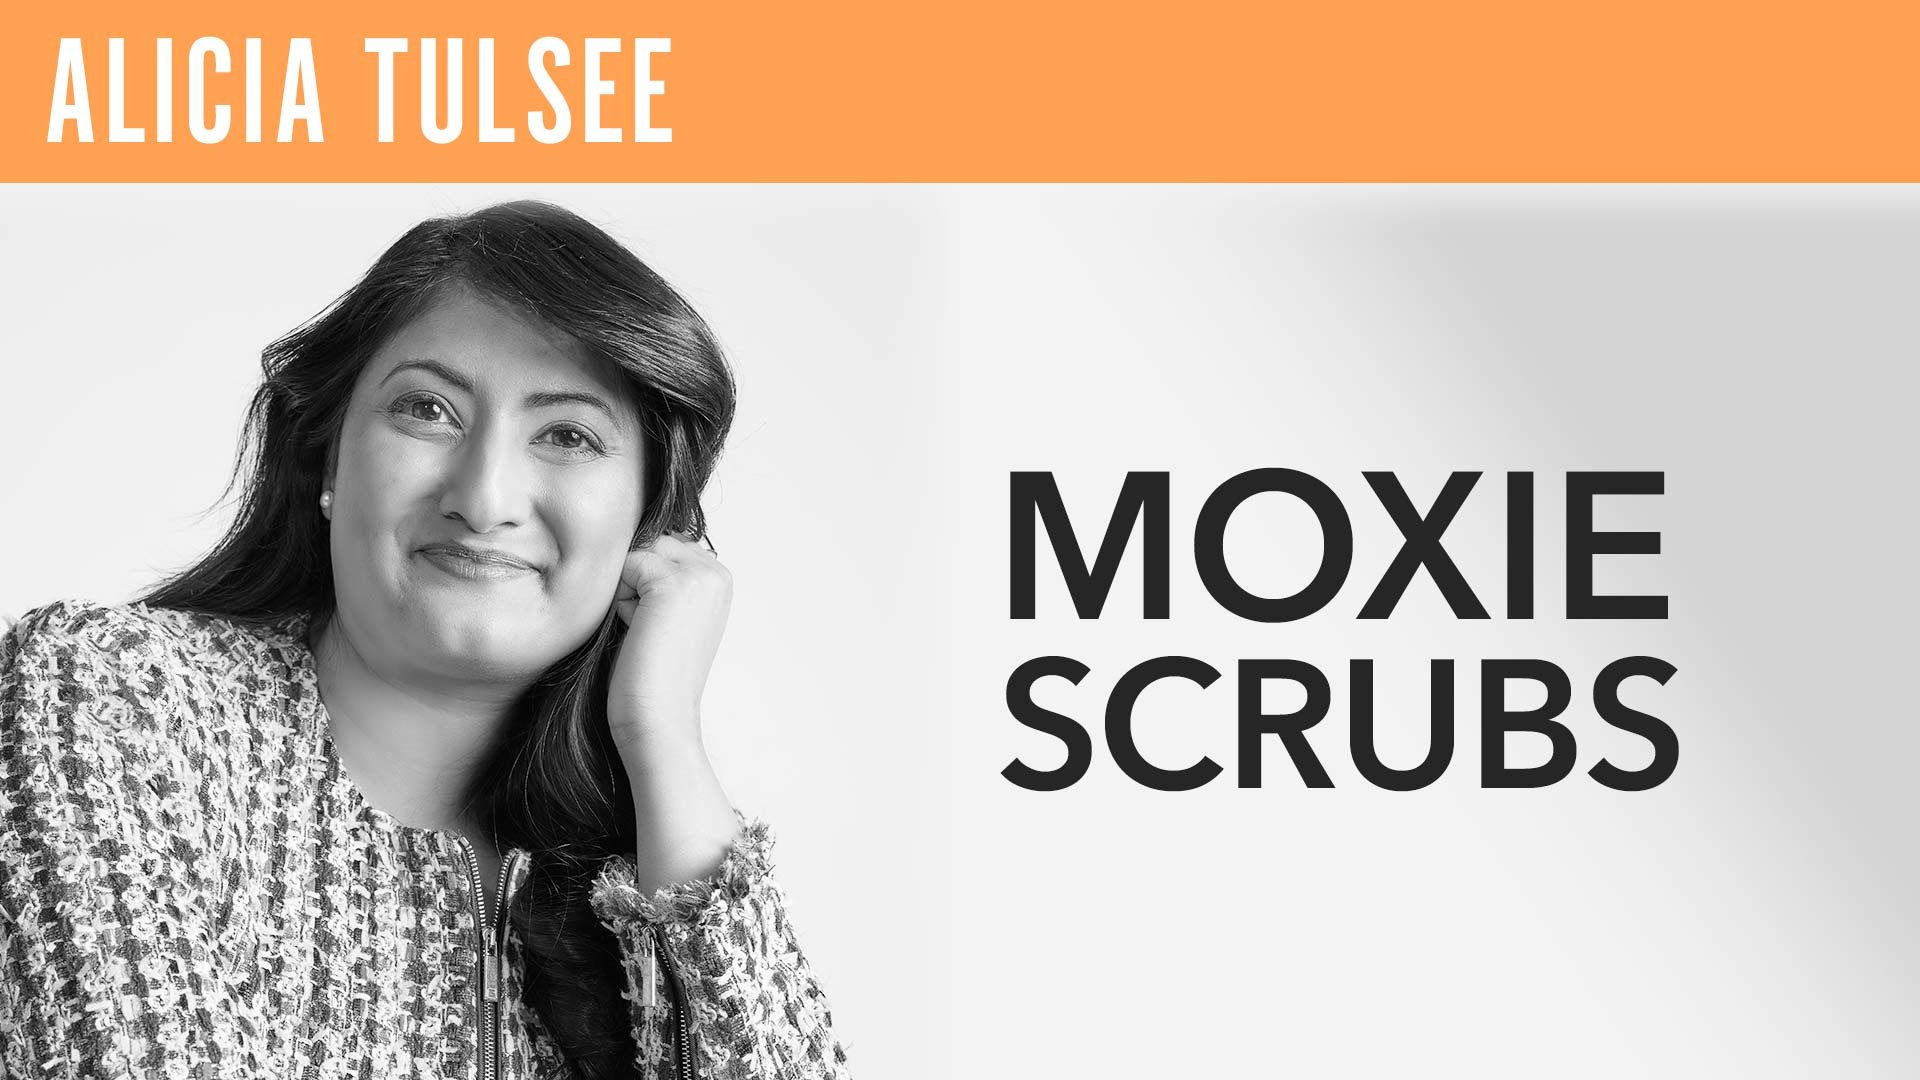 Alicia Tulsee, "Moxie Scrubs"